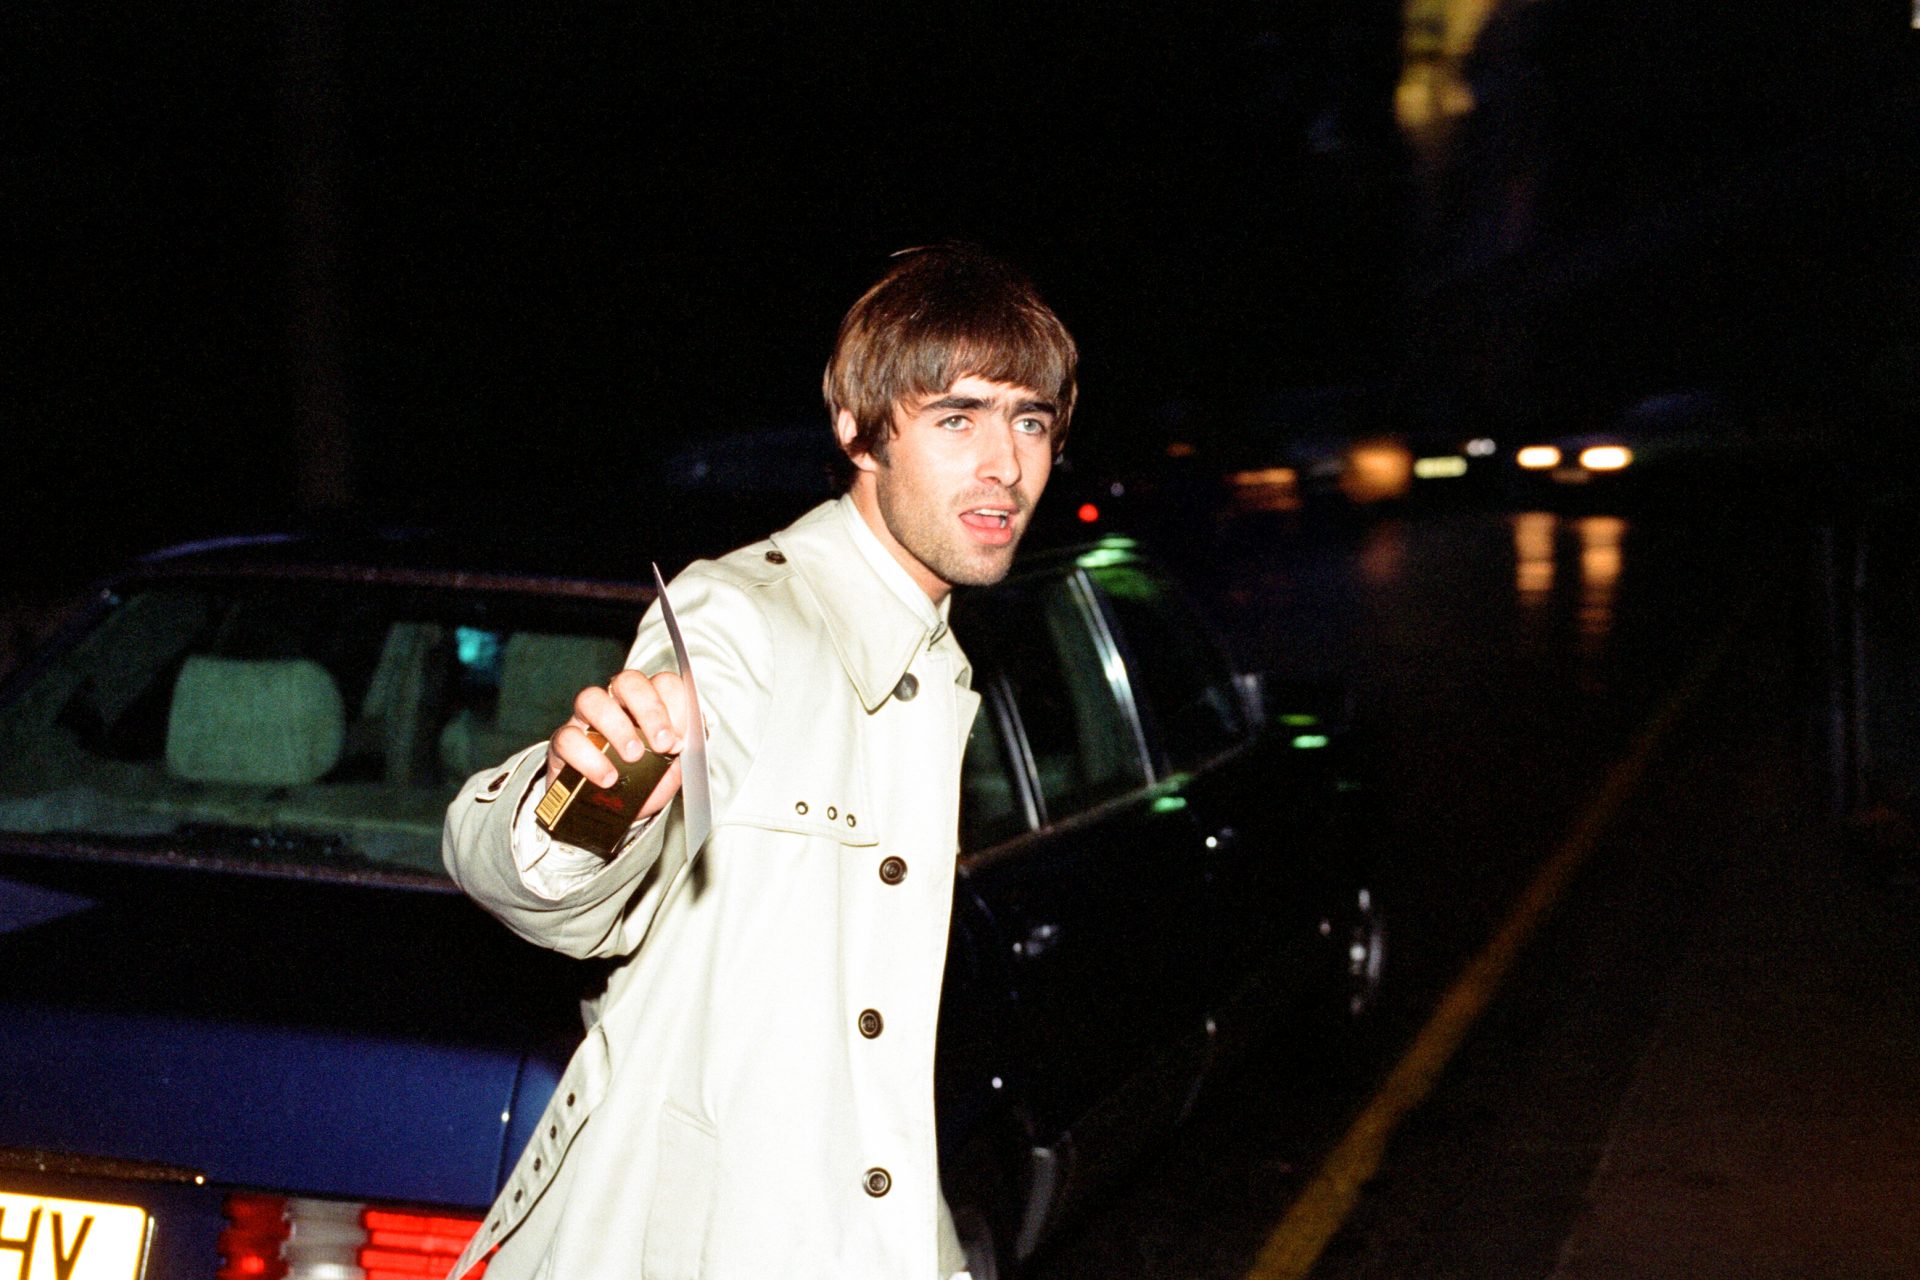 Lebensstil fordert seinen Tribut: Die Gesundheitsprobleme von Liam Gallagher ('Oasis')